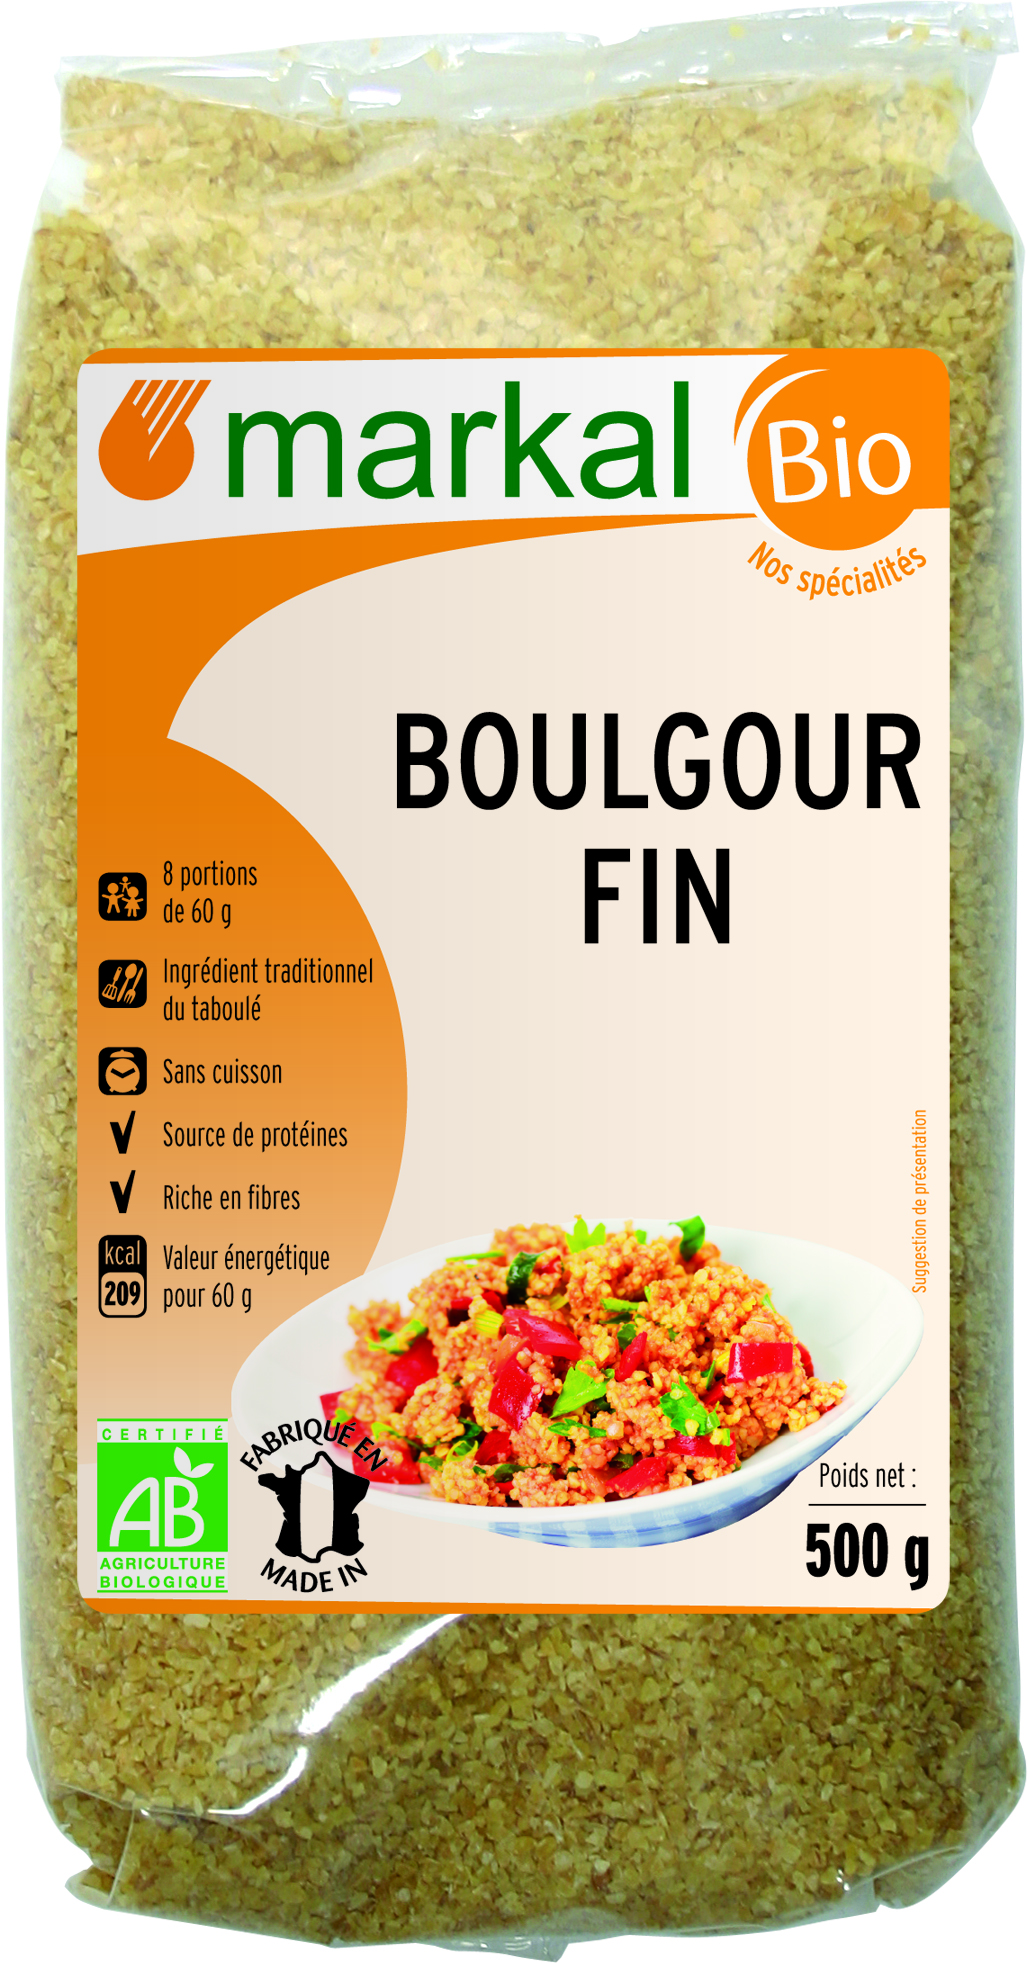 Boulgour fin - 500 g